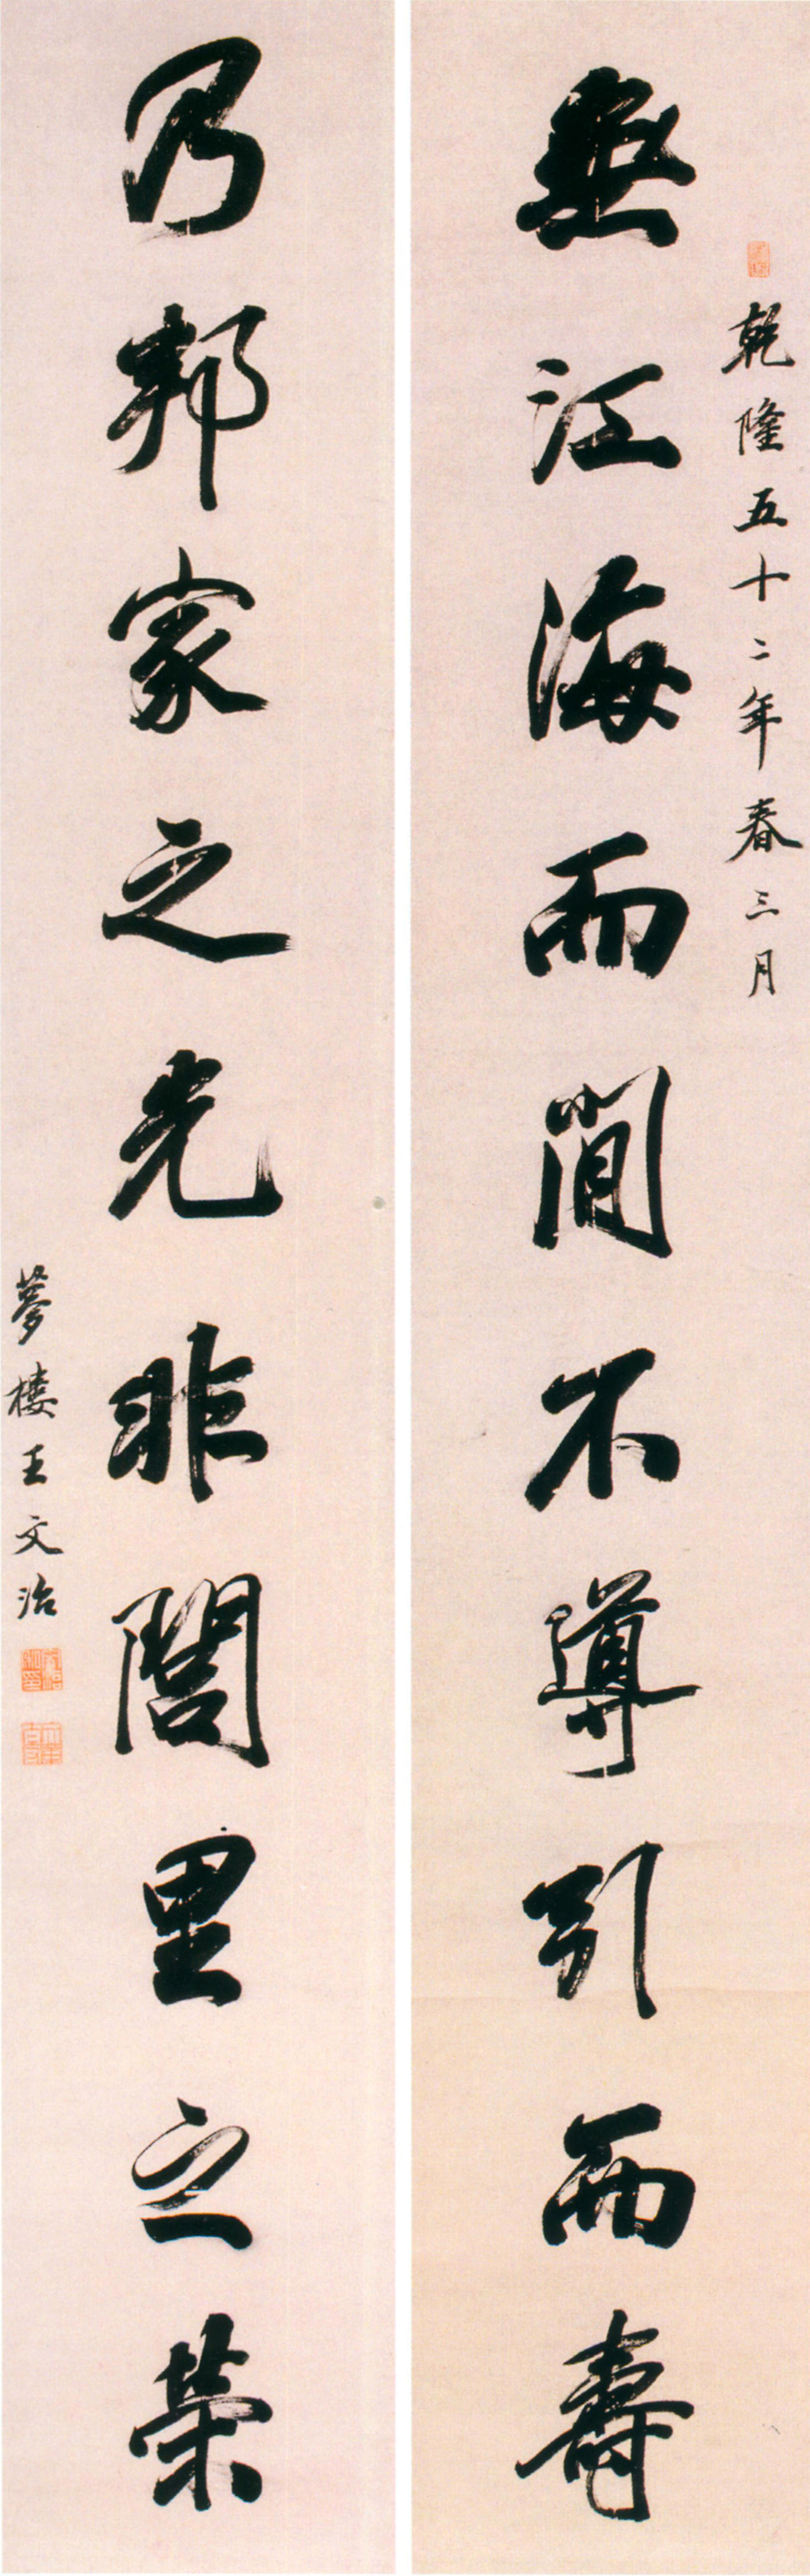 王文治行书《无江乃邦十言联》-常州博物馆藏 (图1)